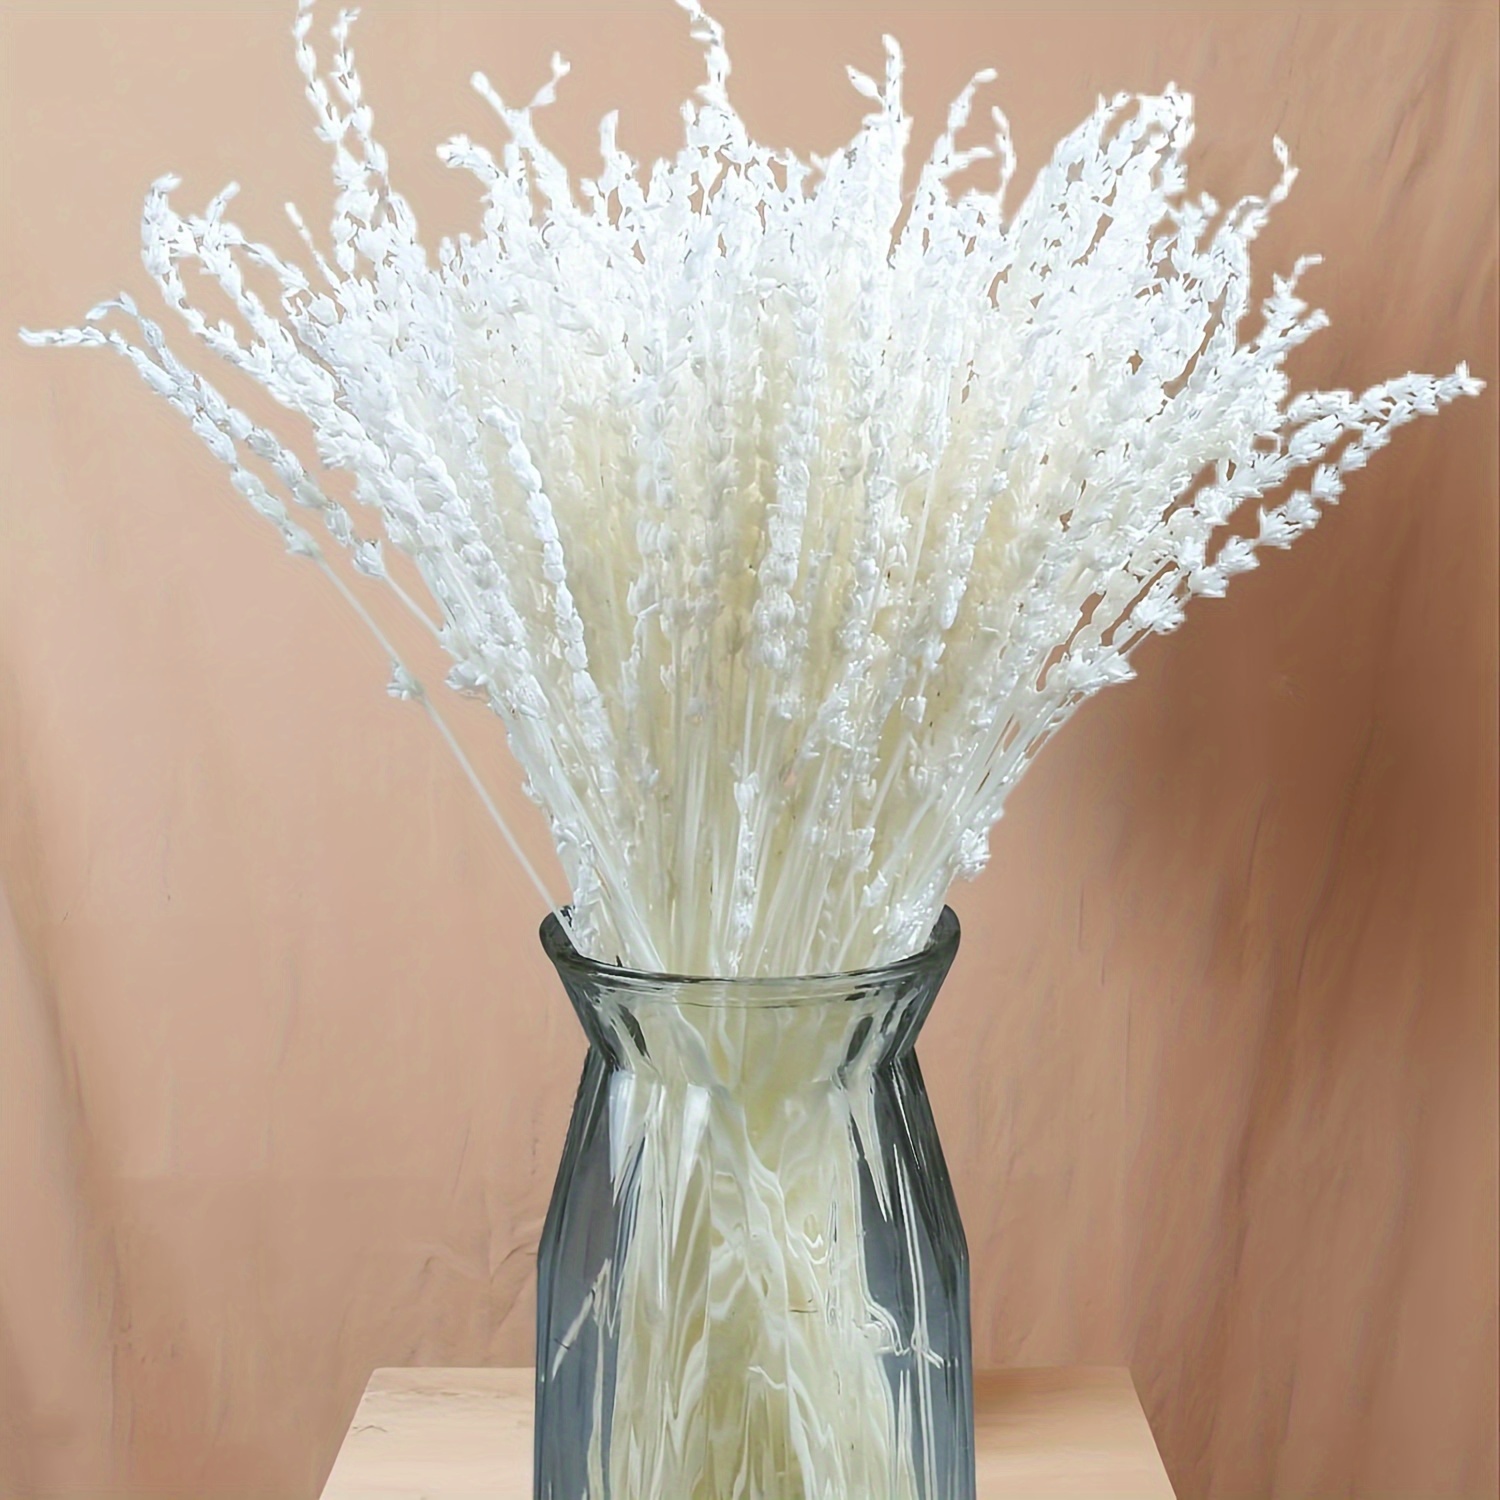 Paquetes de flores secas de lavanda y lavanda marina: ramo de flores secas  de 16 pulgadas 100% naturales para jarrón, decoración del hogar, regalos de